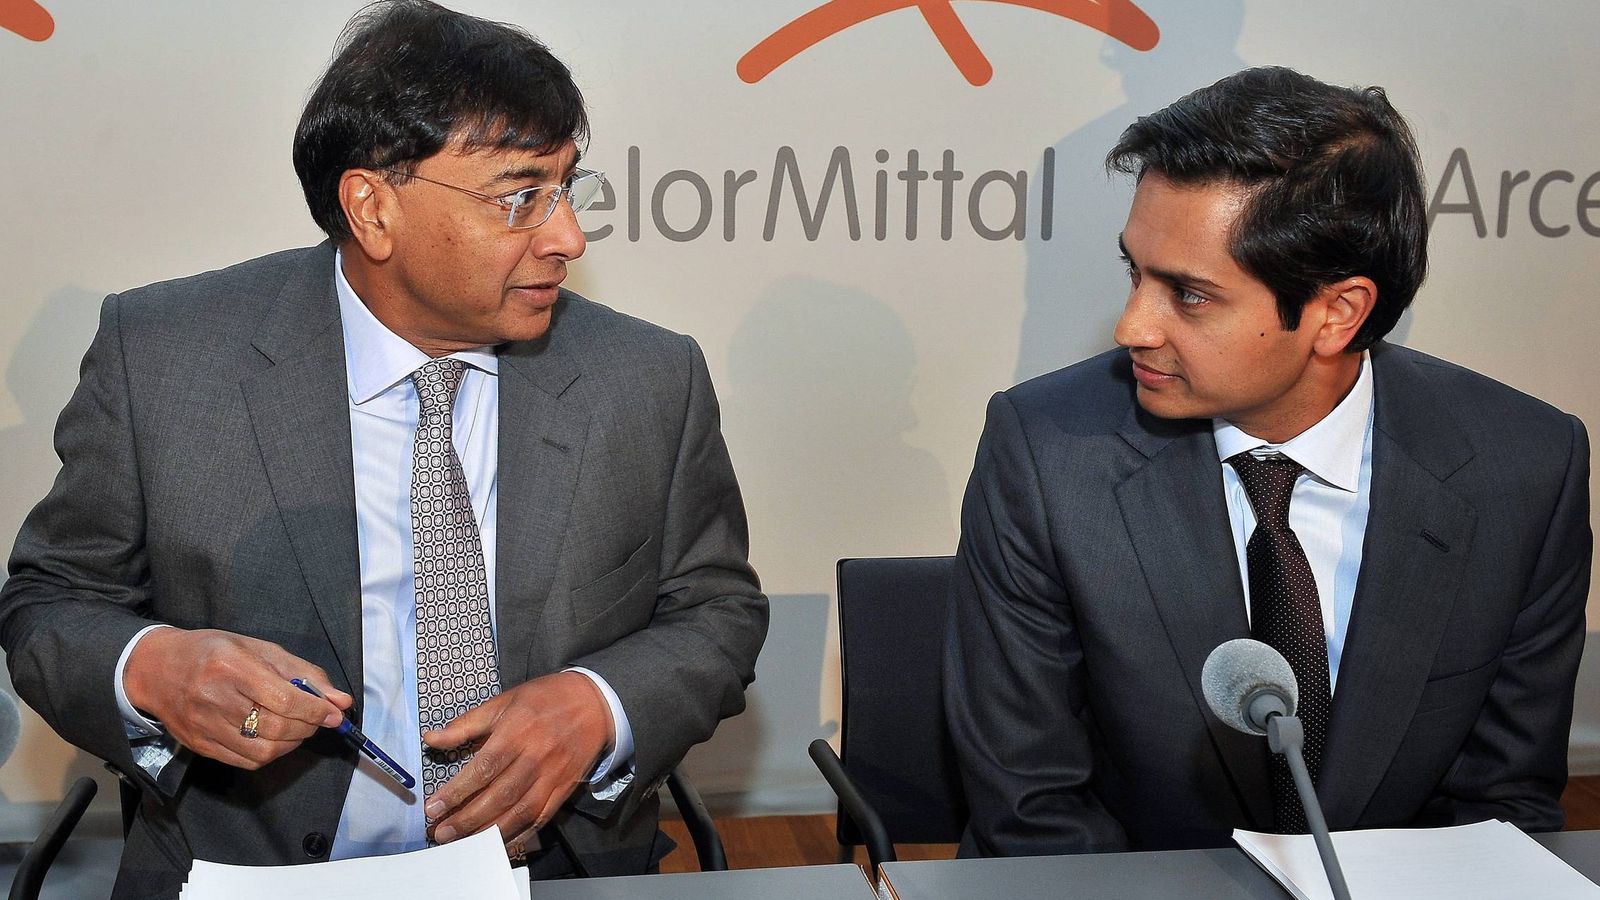 Foto: - El consejero delegado del gigante siderúrgico ArcelorMittal Lakshmi Mittal (i) y el director financiero Aditya Mittal 